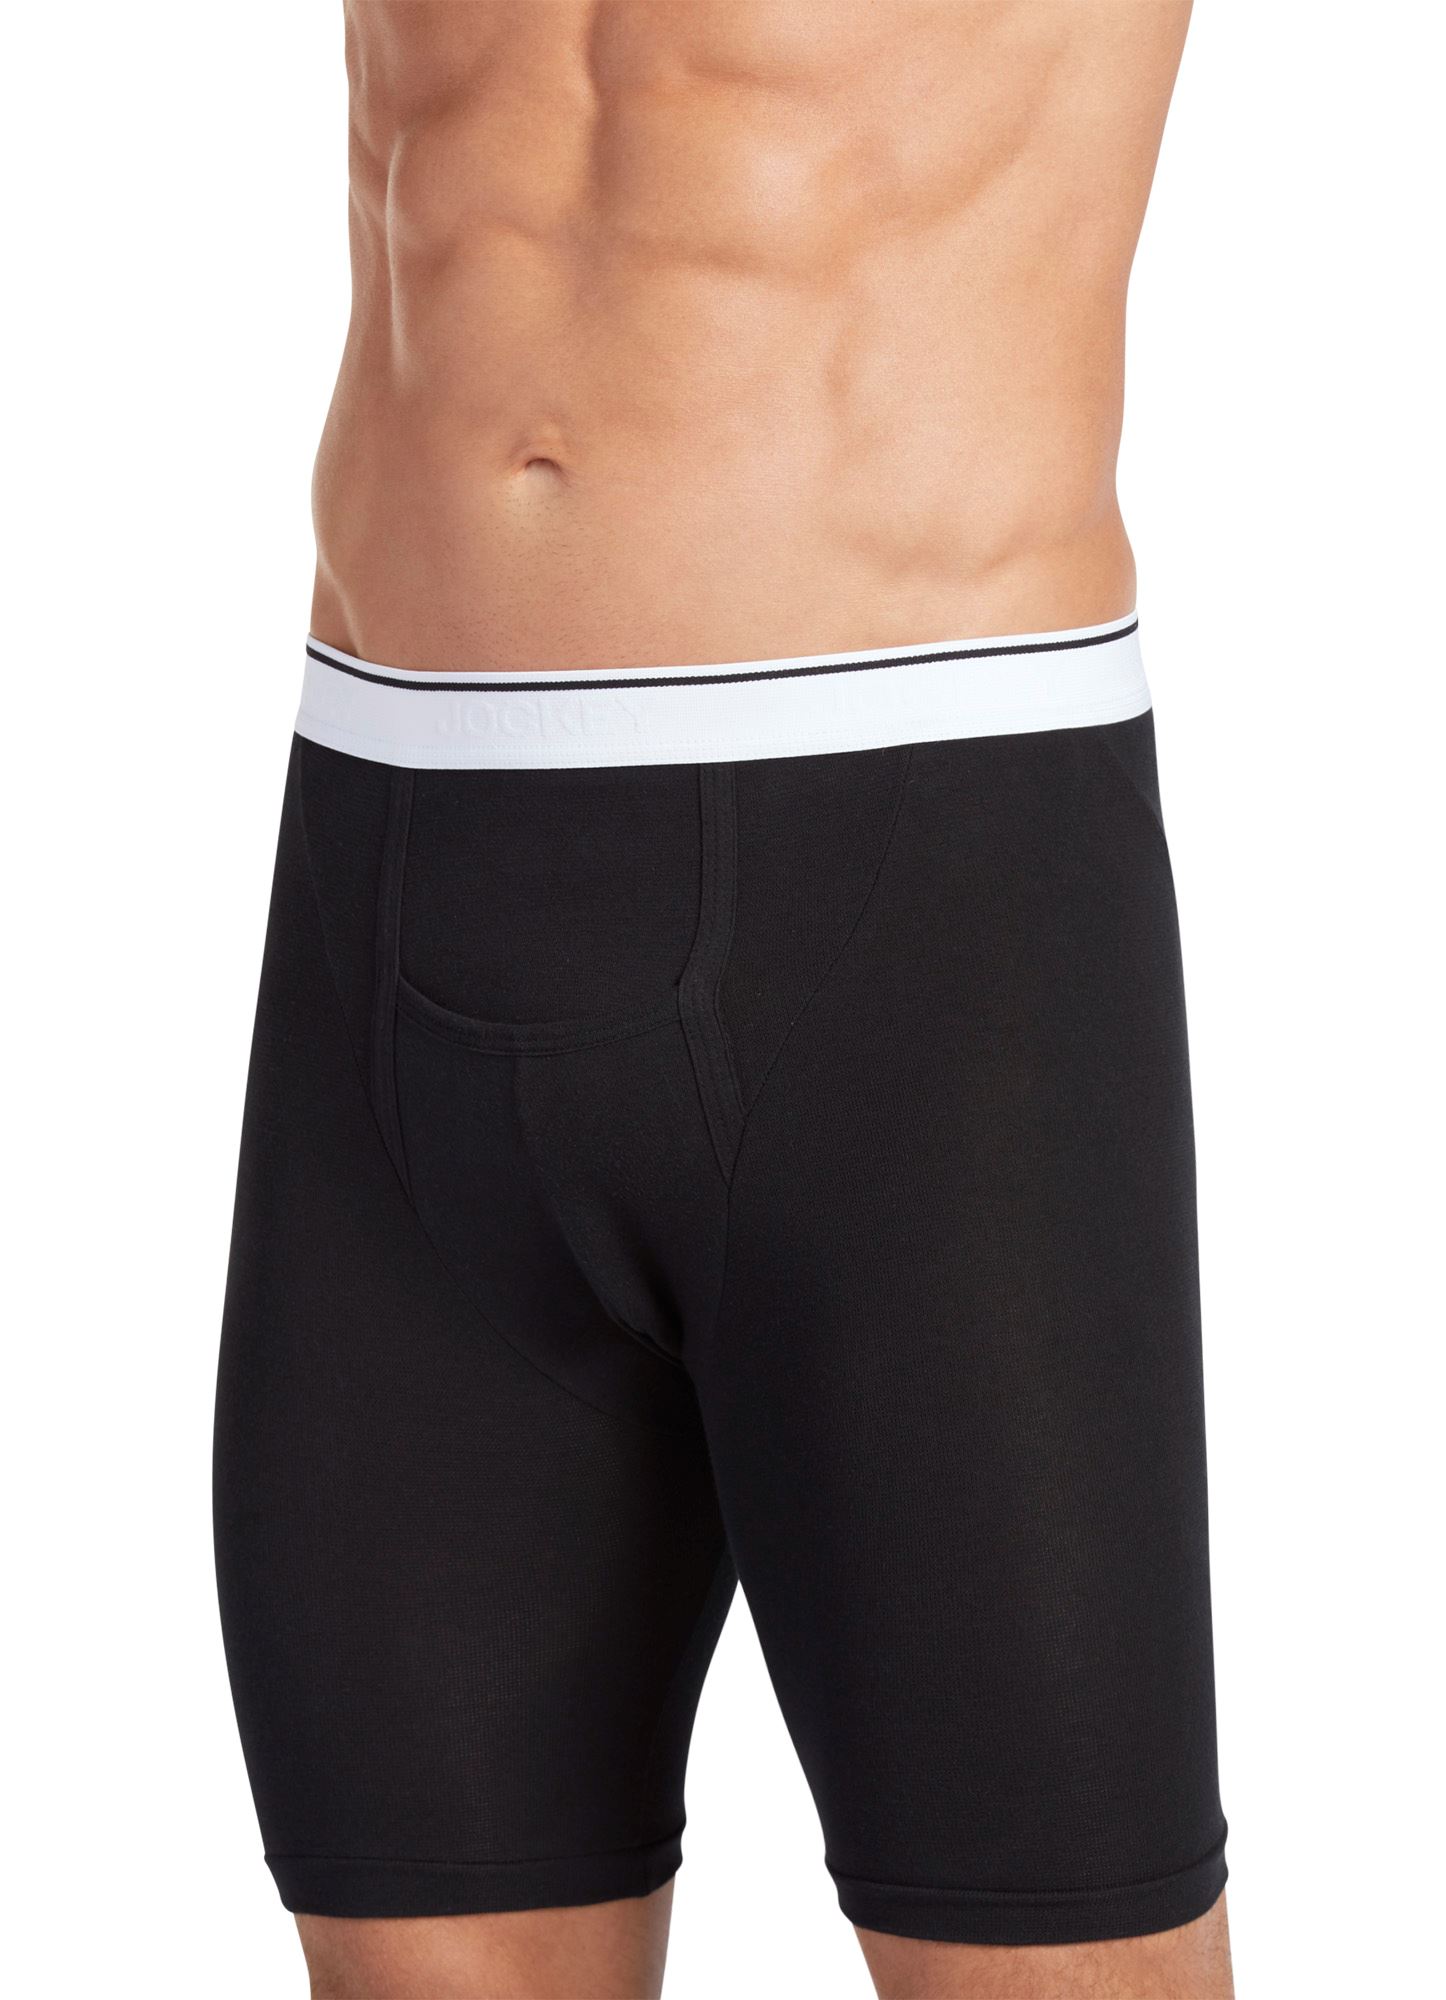 Buy Jockey Men's Underwear Supersoft Modal Brief - 2 Pack Online at  desertcartSeychelles